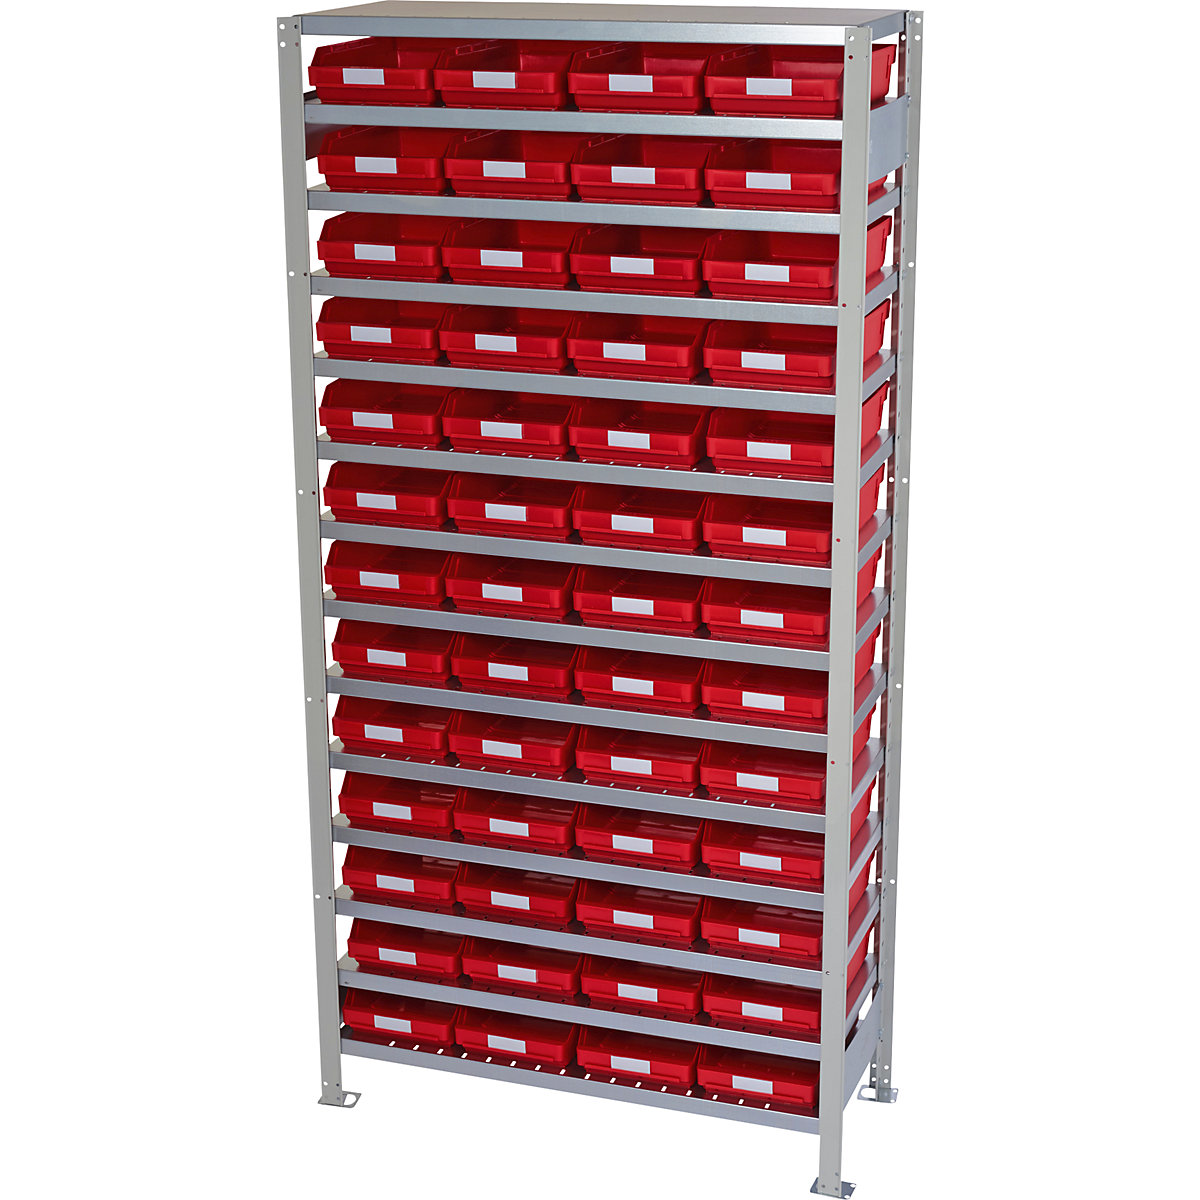 Estante de encaixar com caixas para estante – STEMO, altura da estante 2100 mm, estante básica, profundidade 300 mm, 52 caixas vermelhas-41